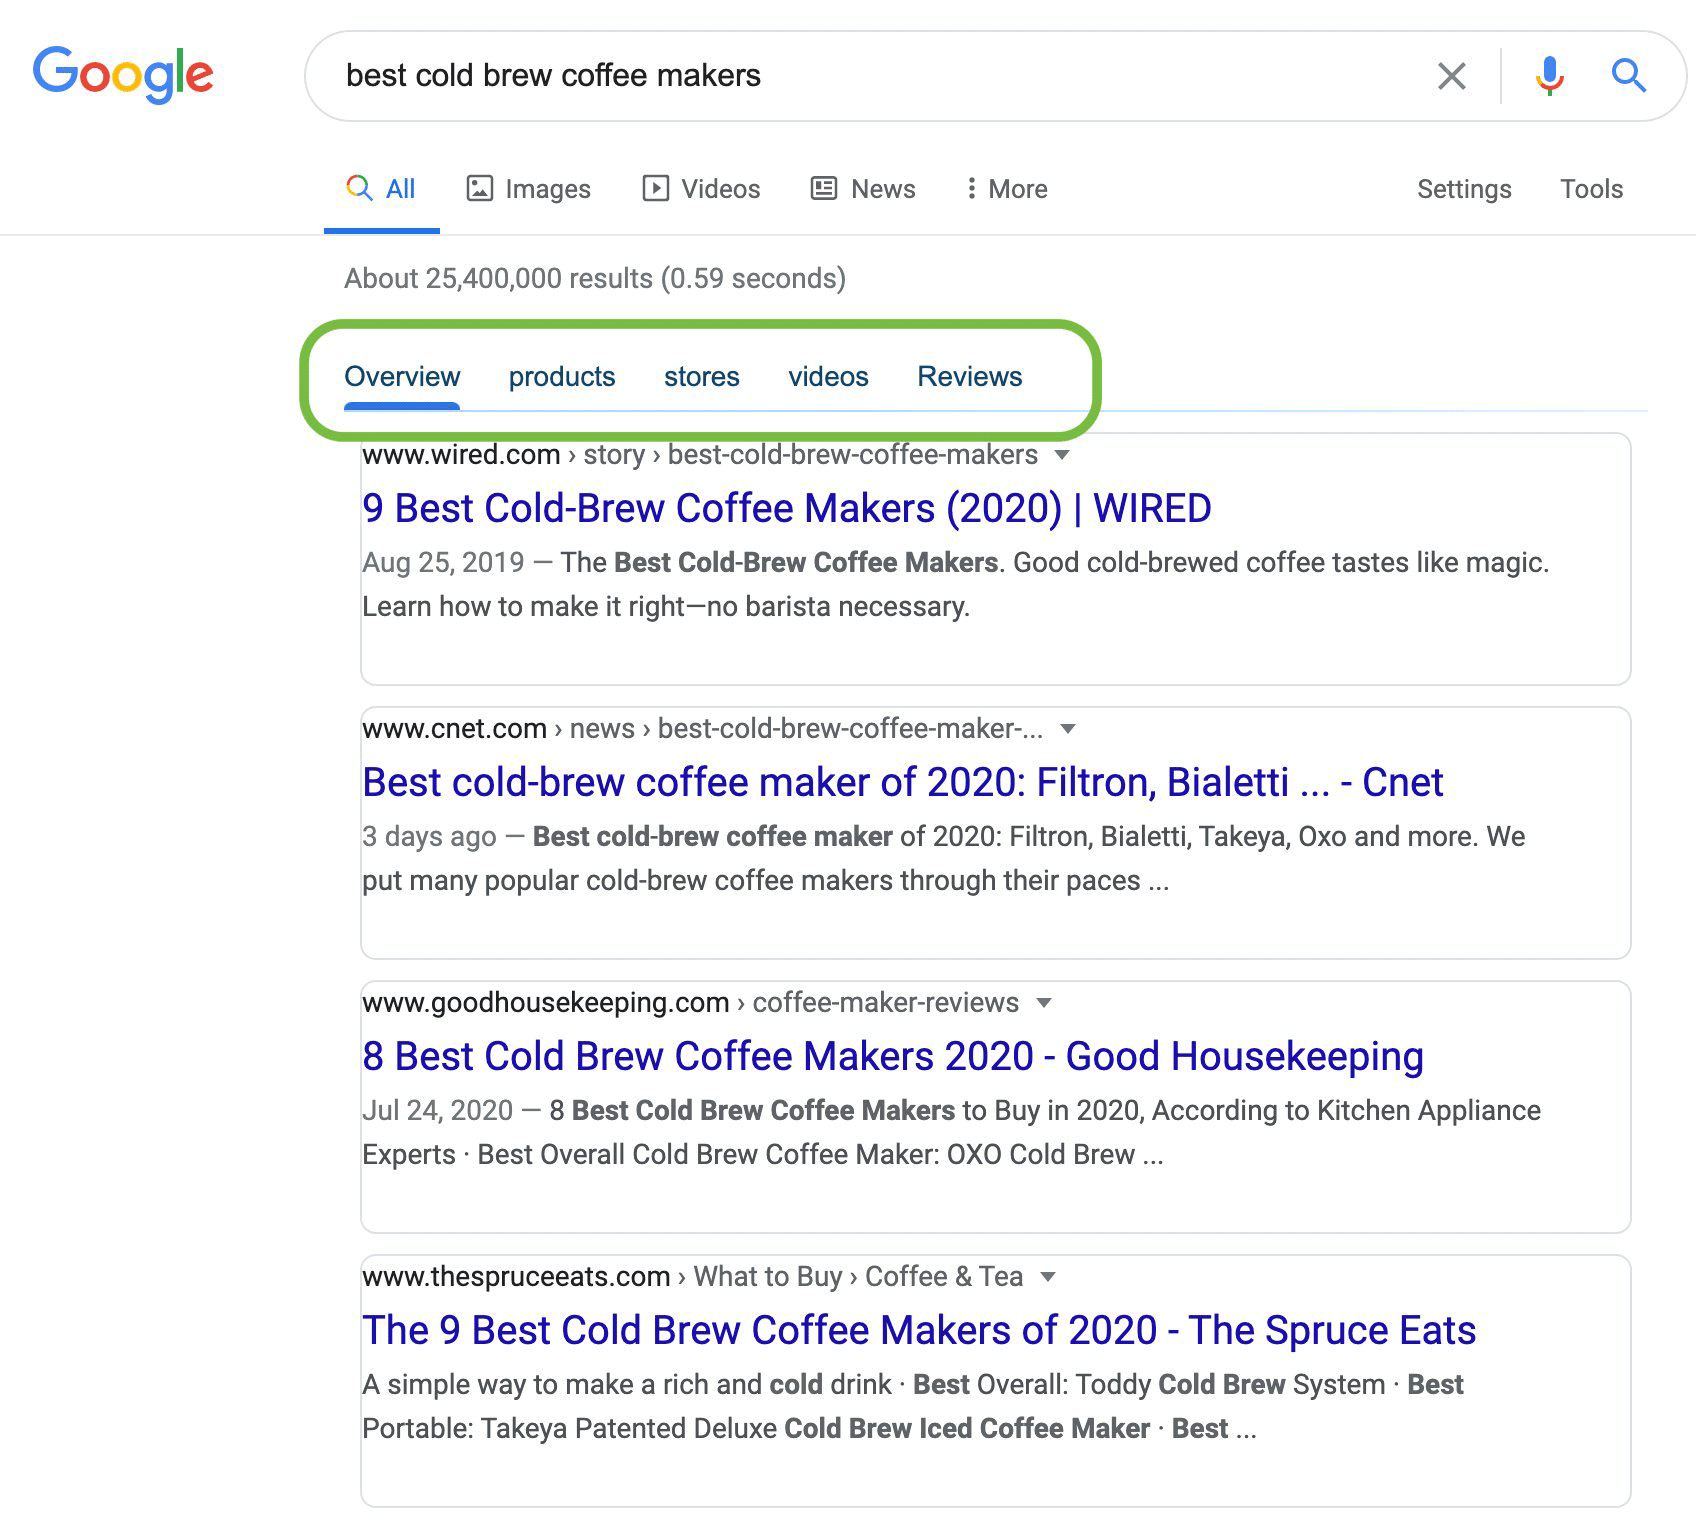 resultados de búsqueda google con subcategorias